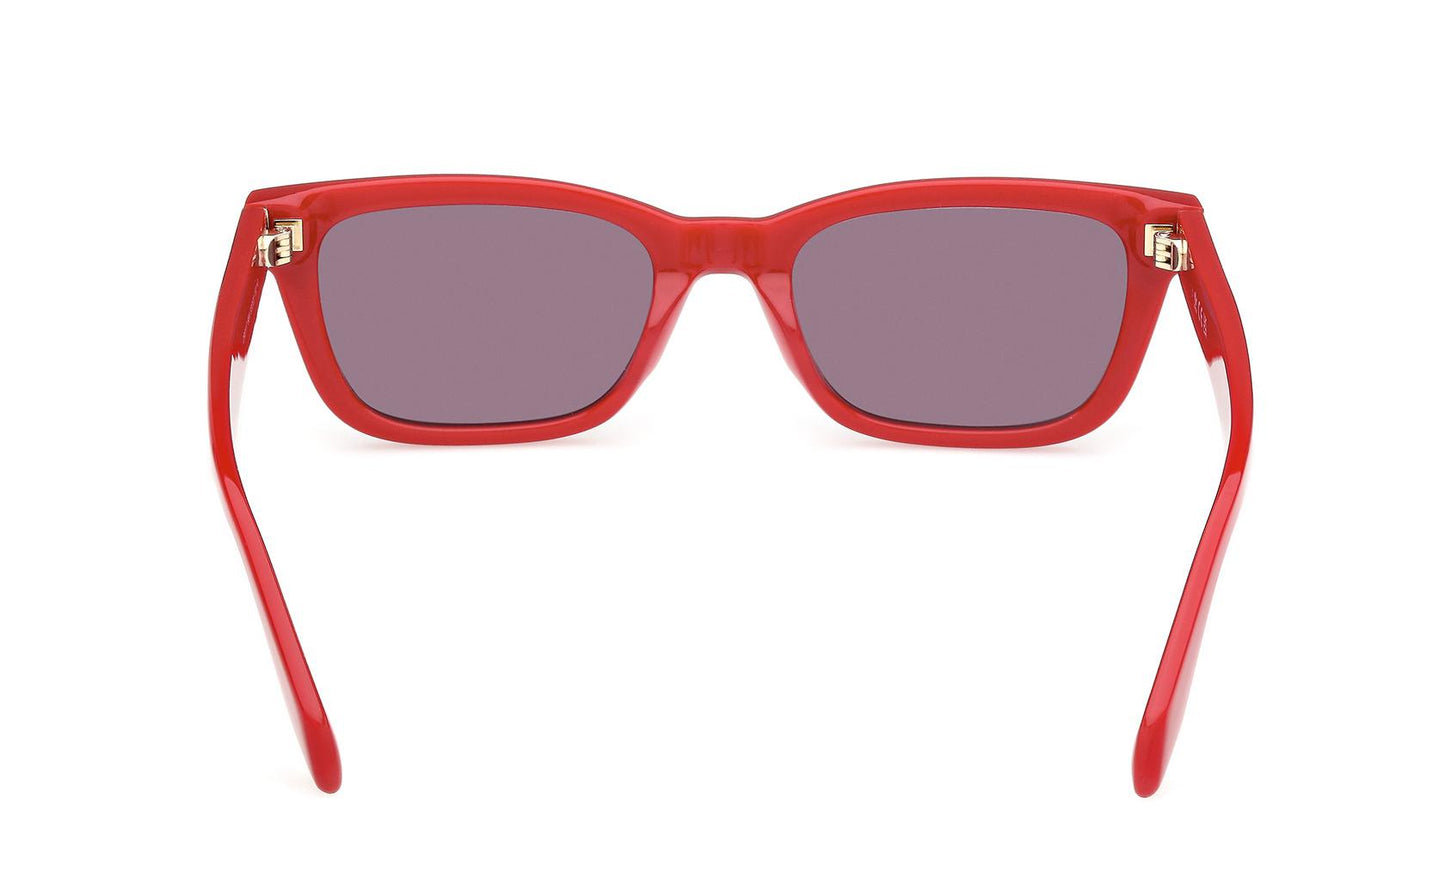 Adidas Originals Sunglasses OR0117 66A